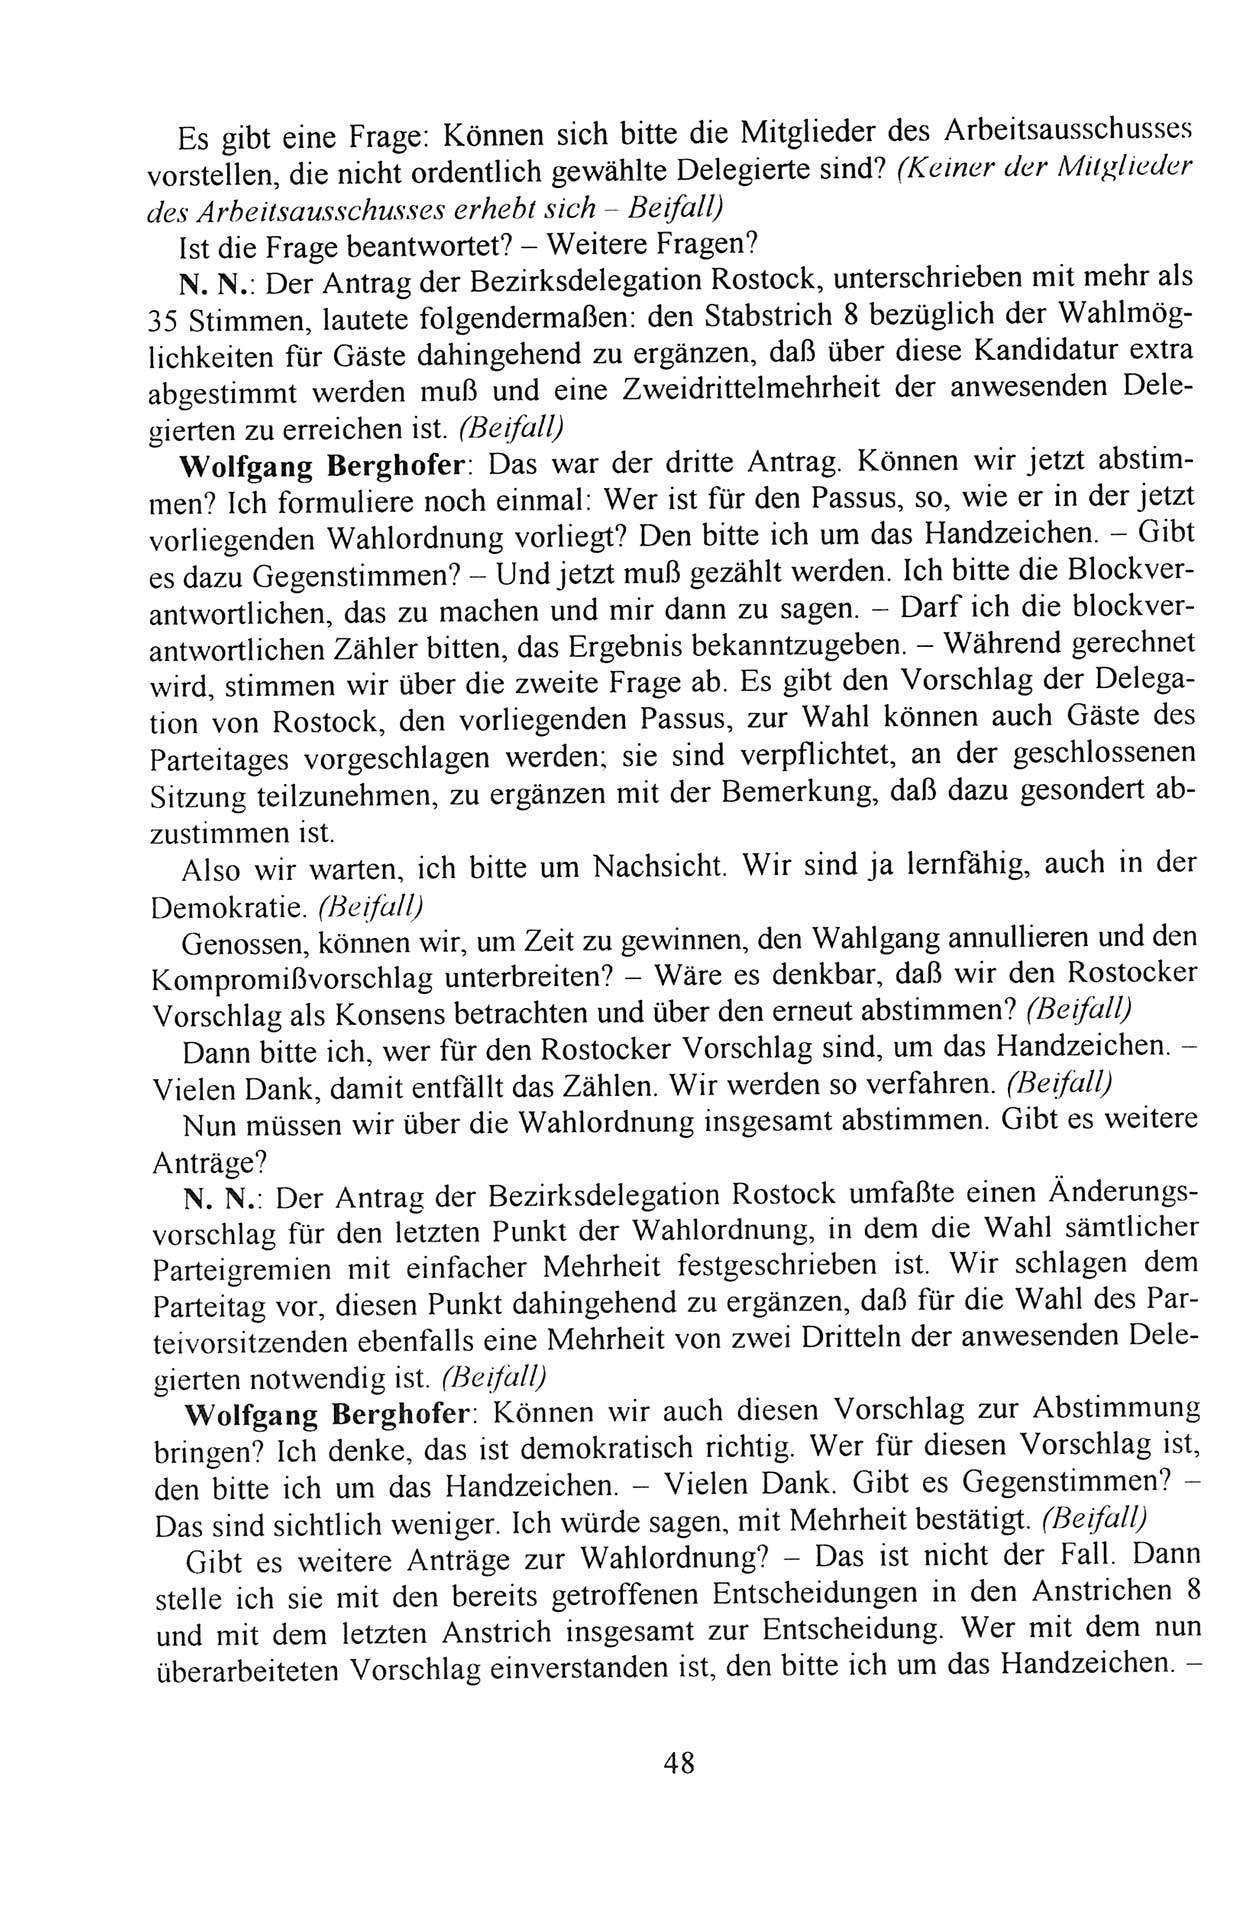 Außerordentlicher Parteitag der SED/PDS (Sozialistische Einheitspartei Deutschlands/Partei des Demokratischen Sozialismus) [Deutsche Demokratische Republik (DDR)], Protokoll der Beratungen am 8./9. und 16./17.12.1989 in Berlin 1989, Seite 48 (PT. SED/PDS DDR Prot. 1989, S. 48)